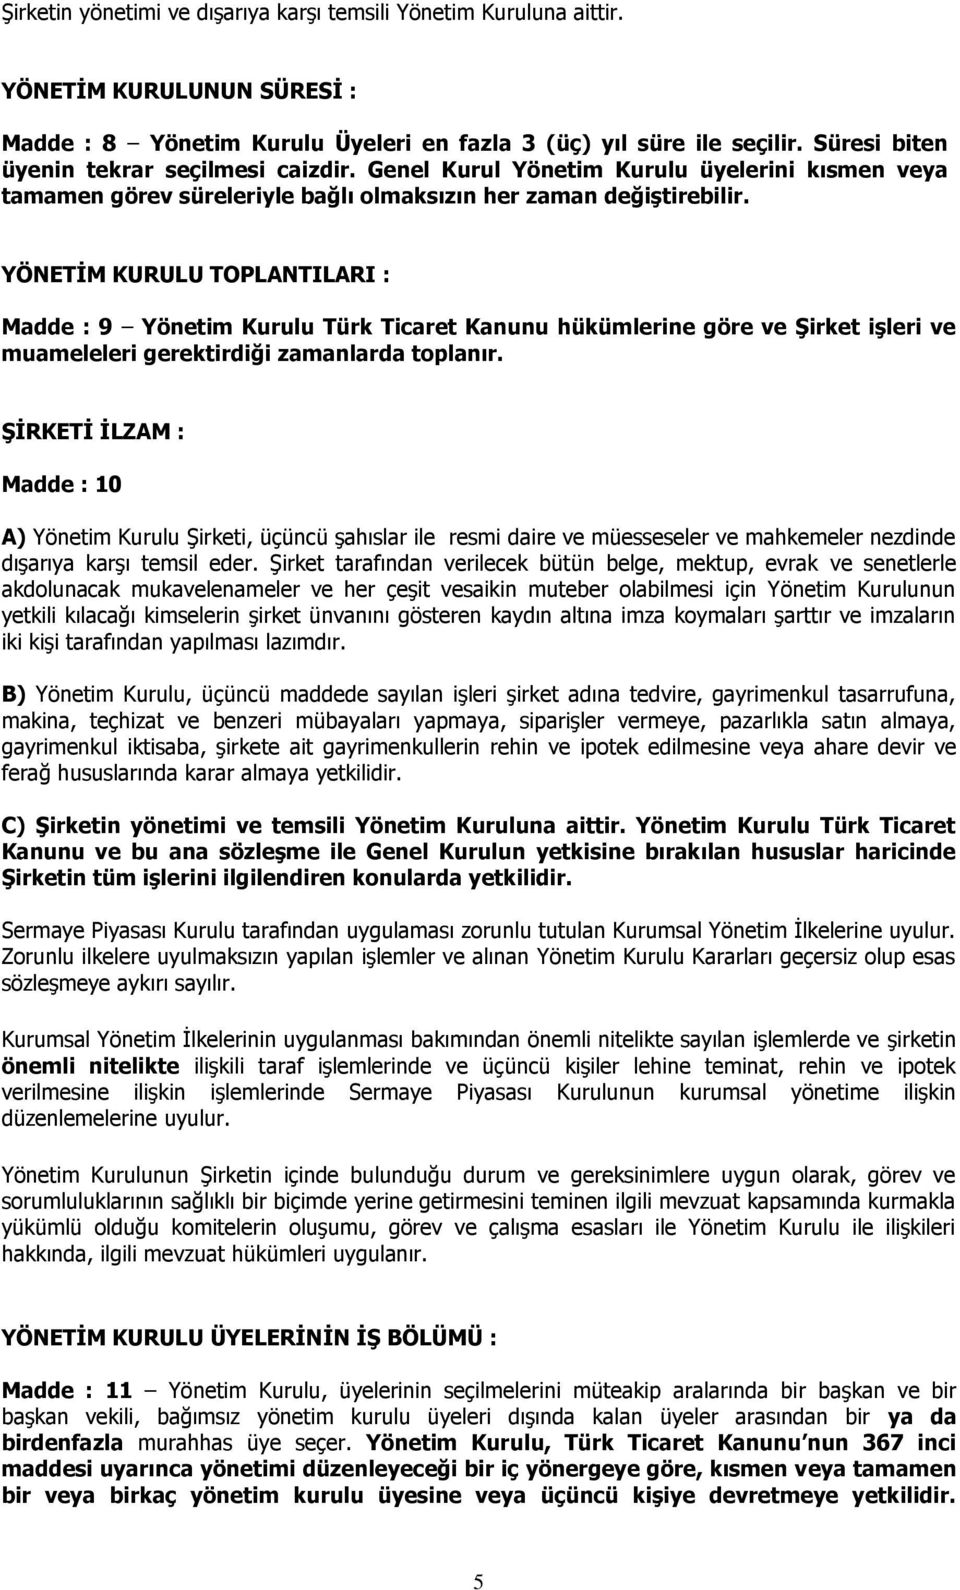 YÖNETİM KURULU TOPLANTILARI : Madde : 9 Yönetim Kurulu Türk Ticaret Kanunu hükümlerine göre ve Şirket işleri ve muameleleri gerektirdiği zamanlarda toplanır.